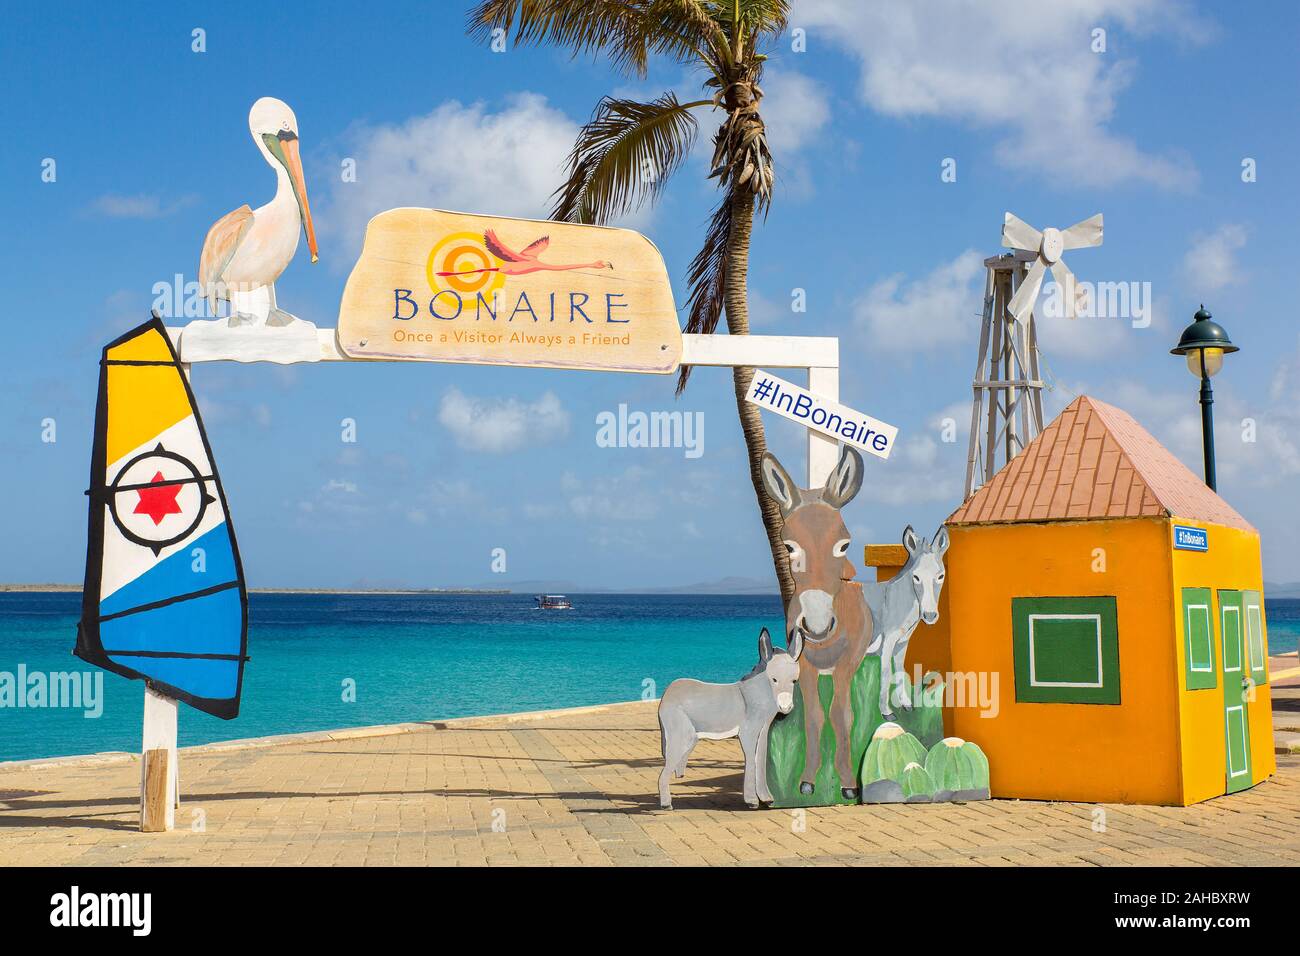 Photo Bienvenue place comme destination de voyage à l'autre sur l'île de Bonaire Banque D'Images